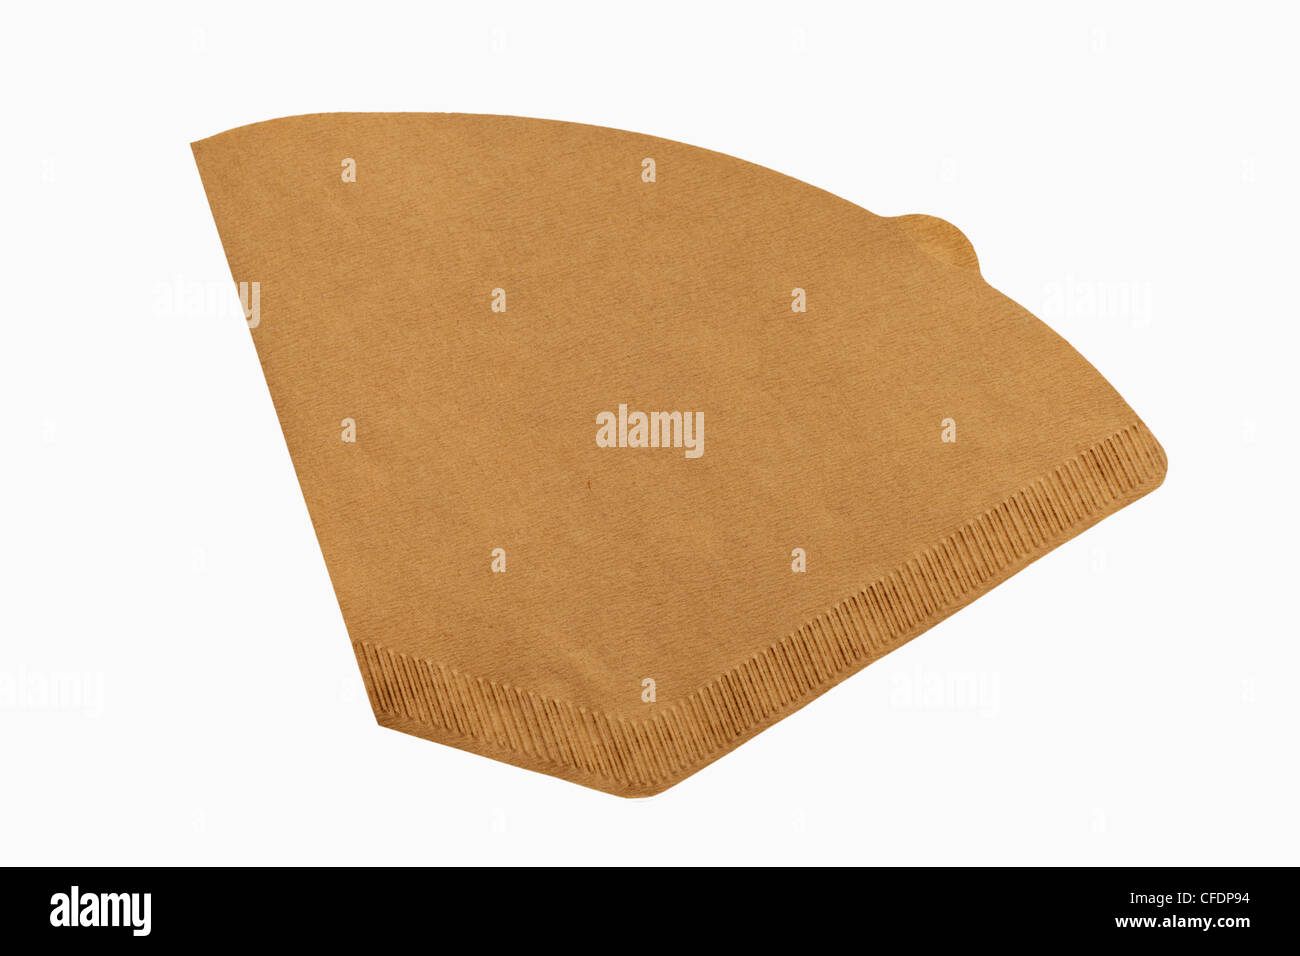 Detailansicht einer braunen Filtertüte | Detail photo of a brown filter paper Stock Photo